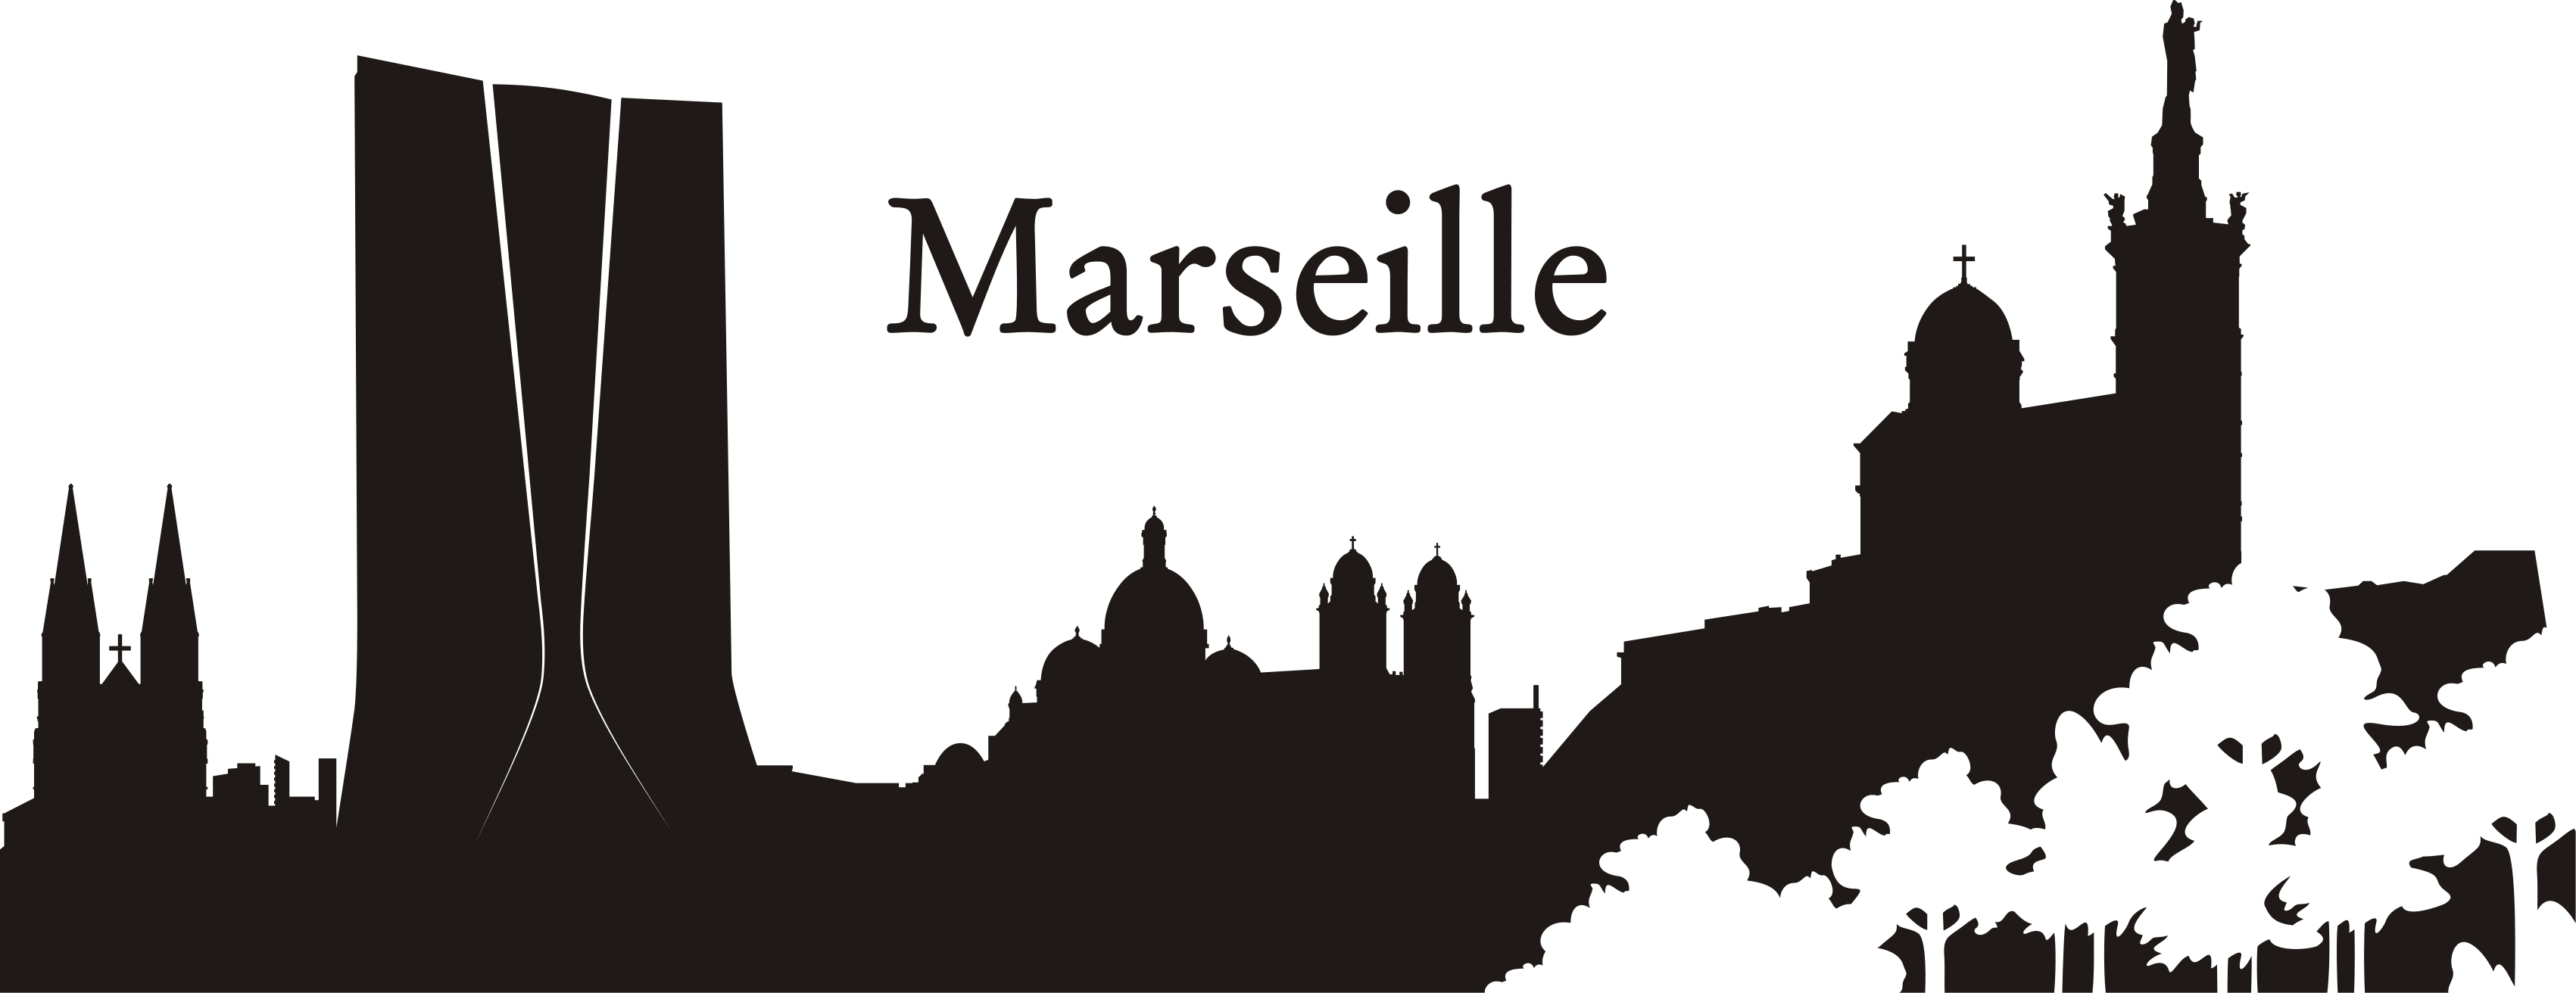 Une Esquisse De La Ville De Marseille En Sticker Mural - Marseille (3402x1312), Png Download